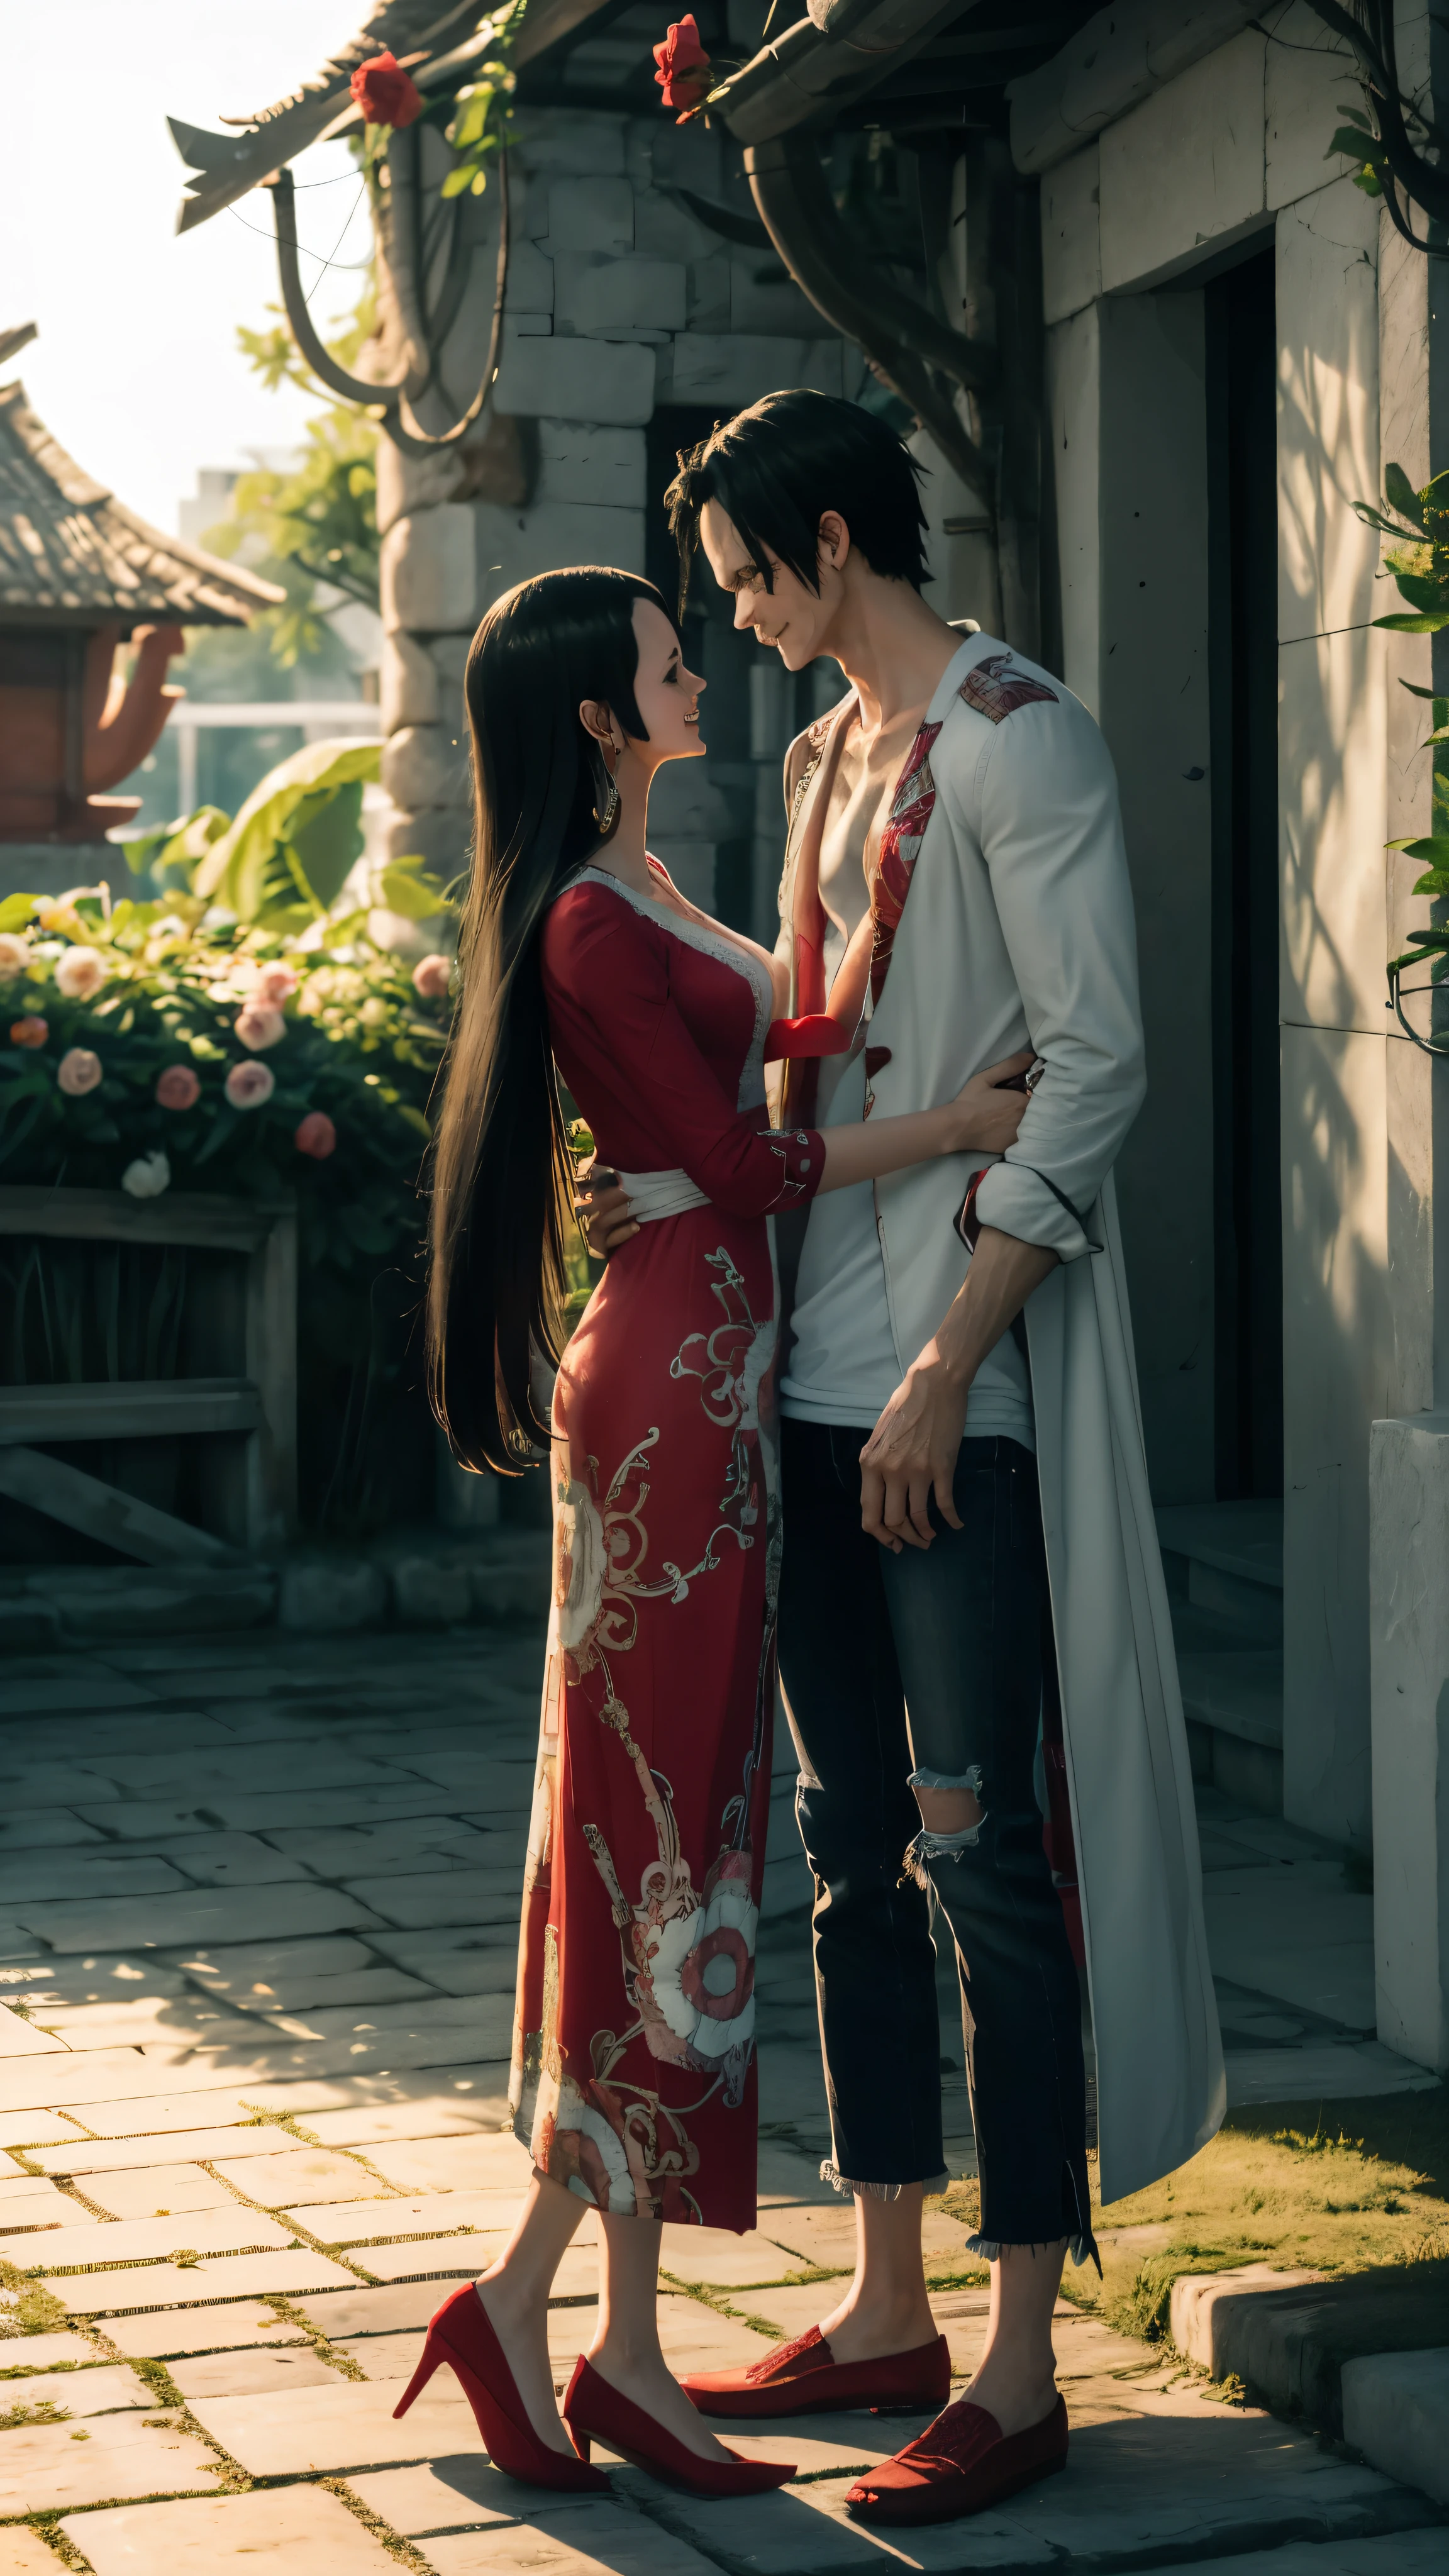 最高品質, 素晴らしい牧歌的な風景の中でのロマンチックなカップル, ロマンチックな雰囲気, 注目の詳細; 男モンキー・D・ルフィの白いTシャツとデニムコート, 長い黒髪の女性ボア・ハンコック, 花と白い靴を持つ赤いドレス, 輝く笑顔, 夕日の光の中でキス